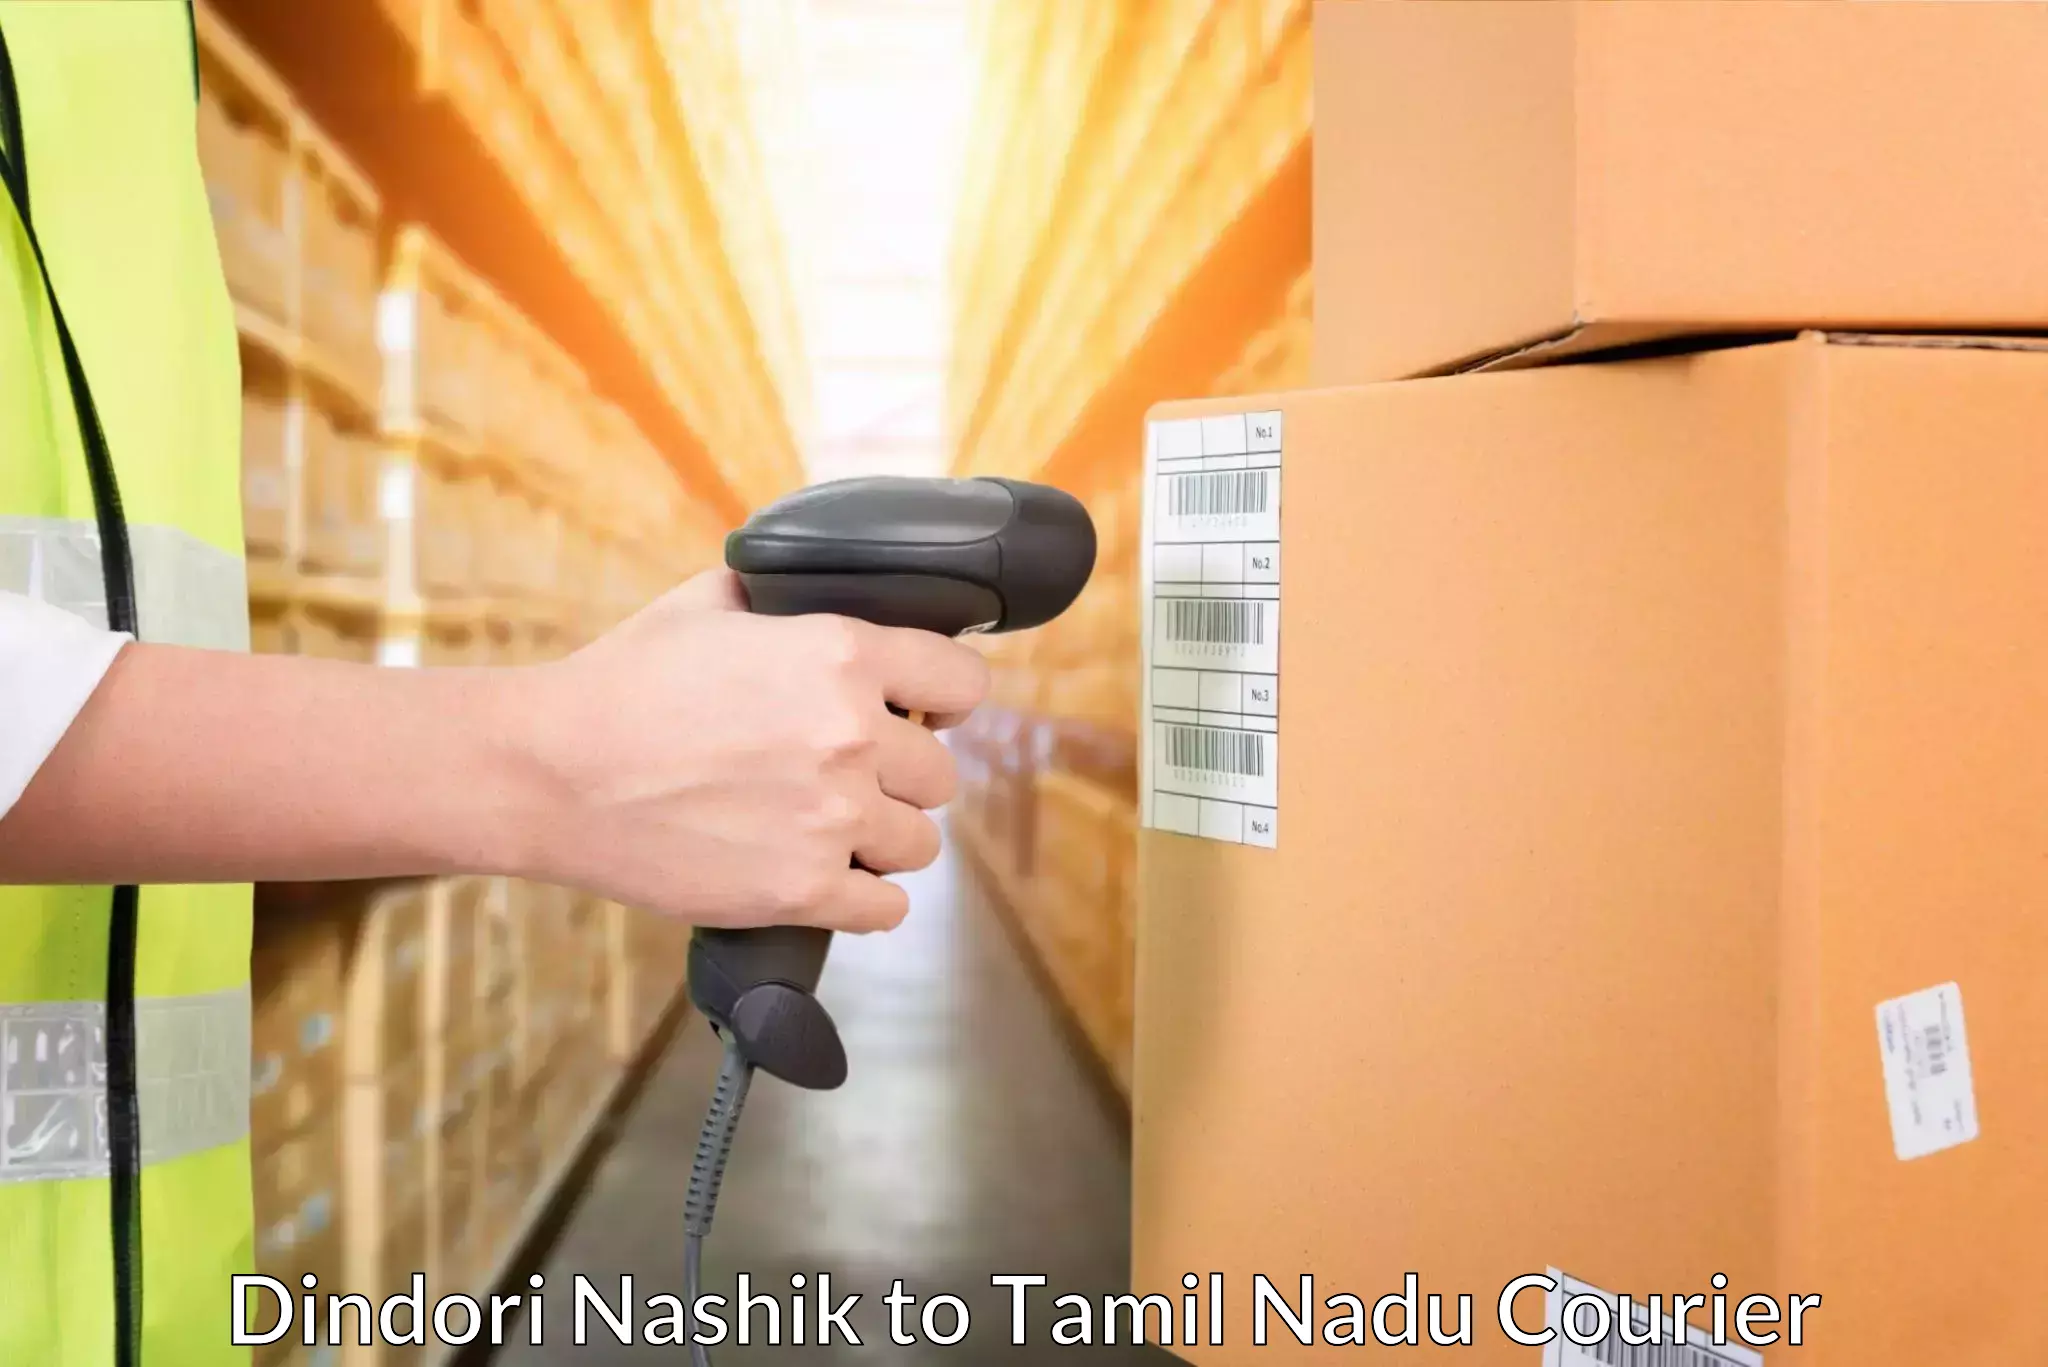 Expedited parcel delivery Dindori Nashik to Karur